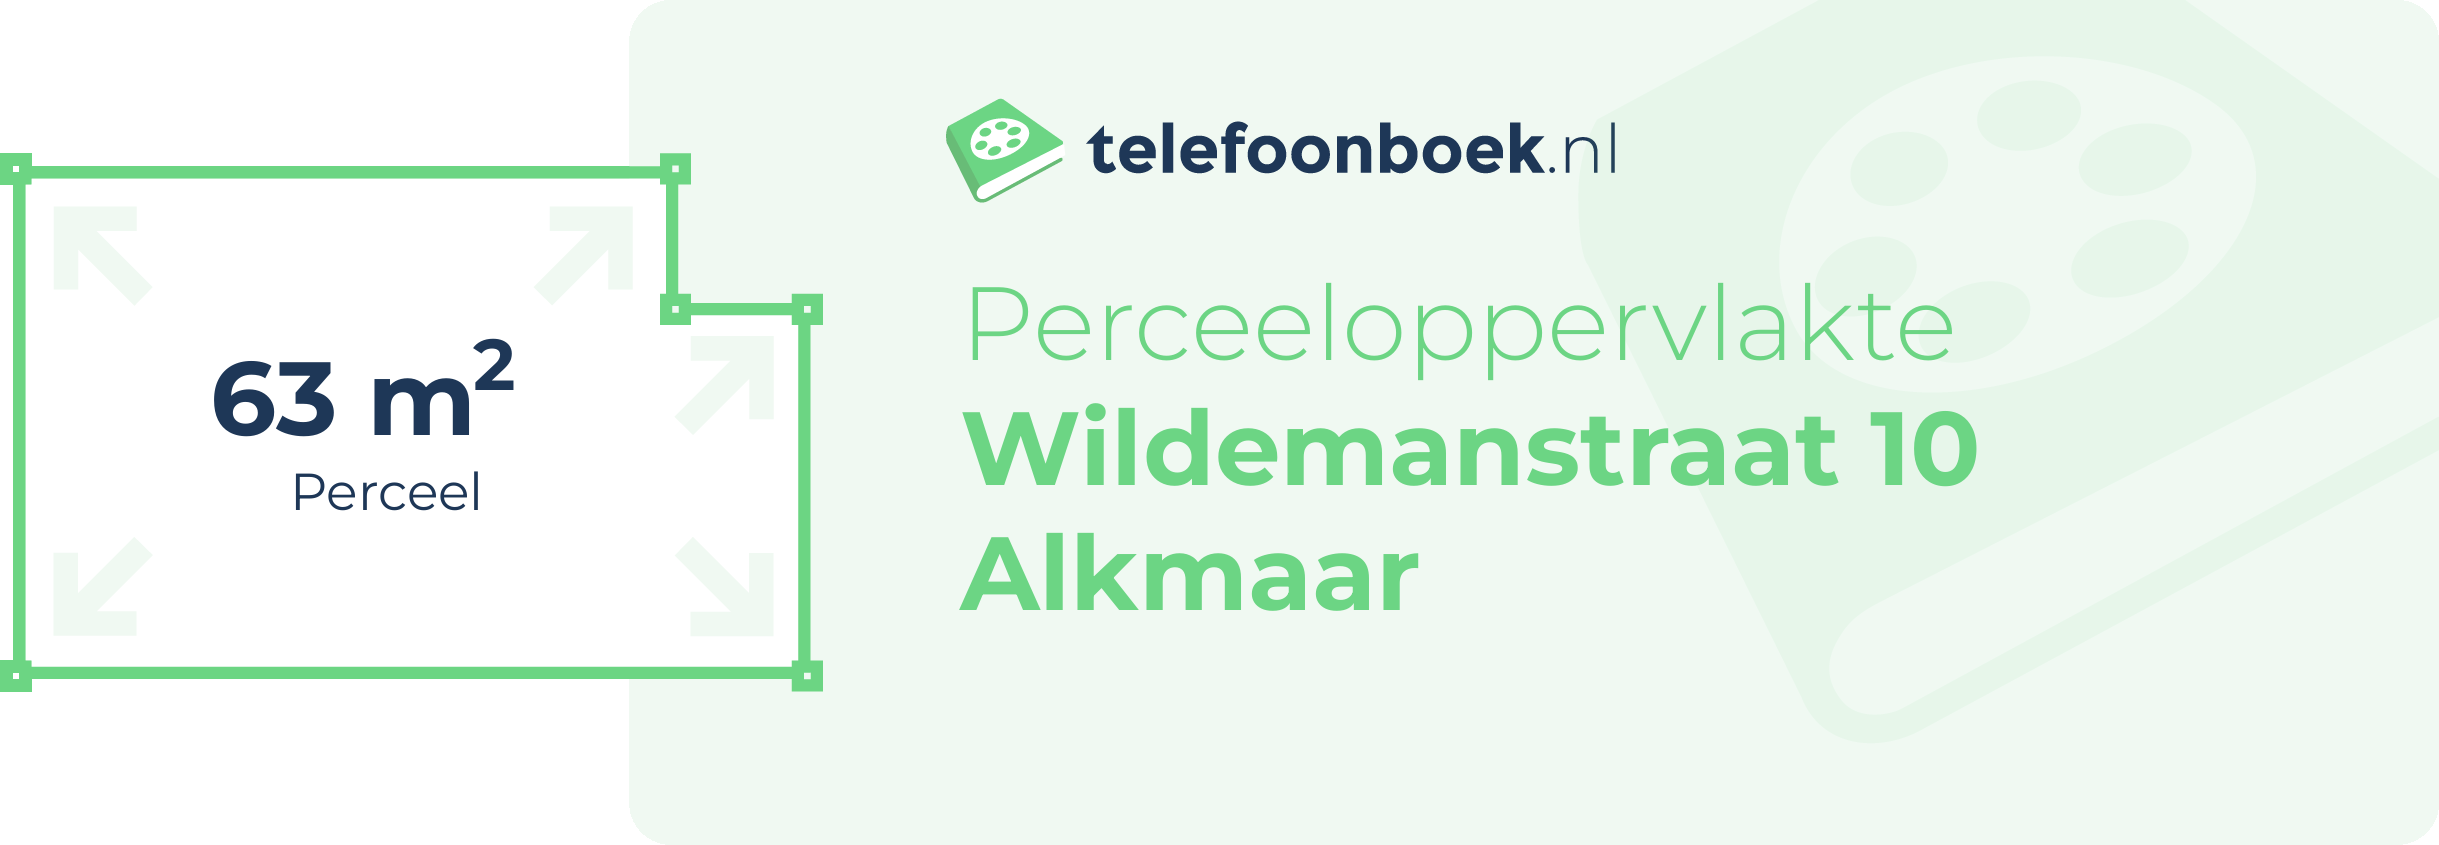 Perceeloppervlakte Wildemanstraat 10 Alkmaar